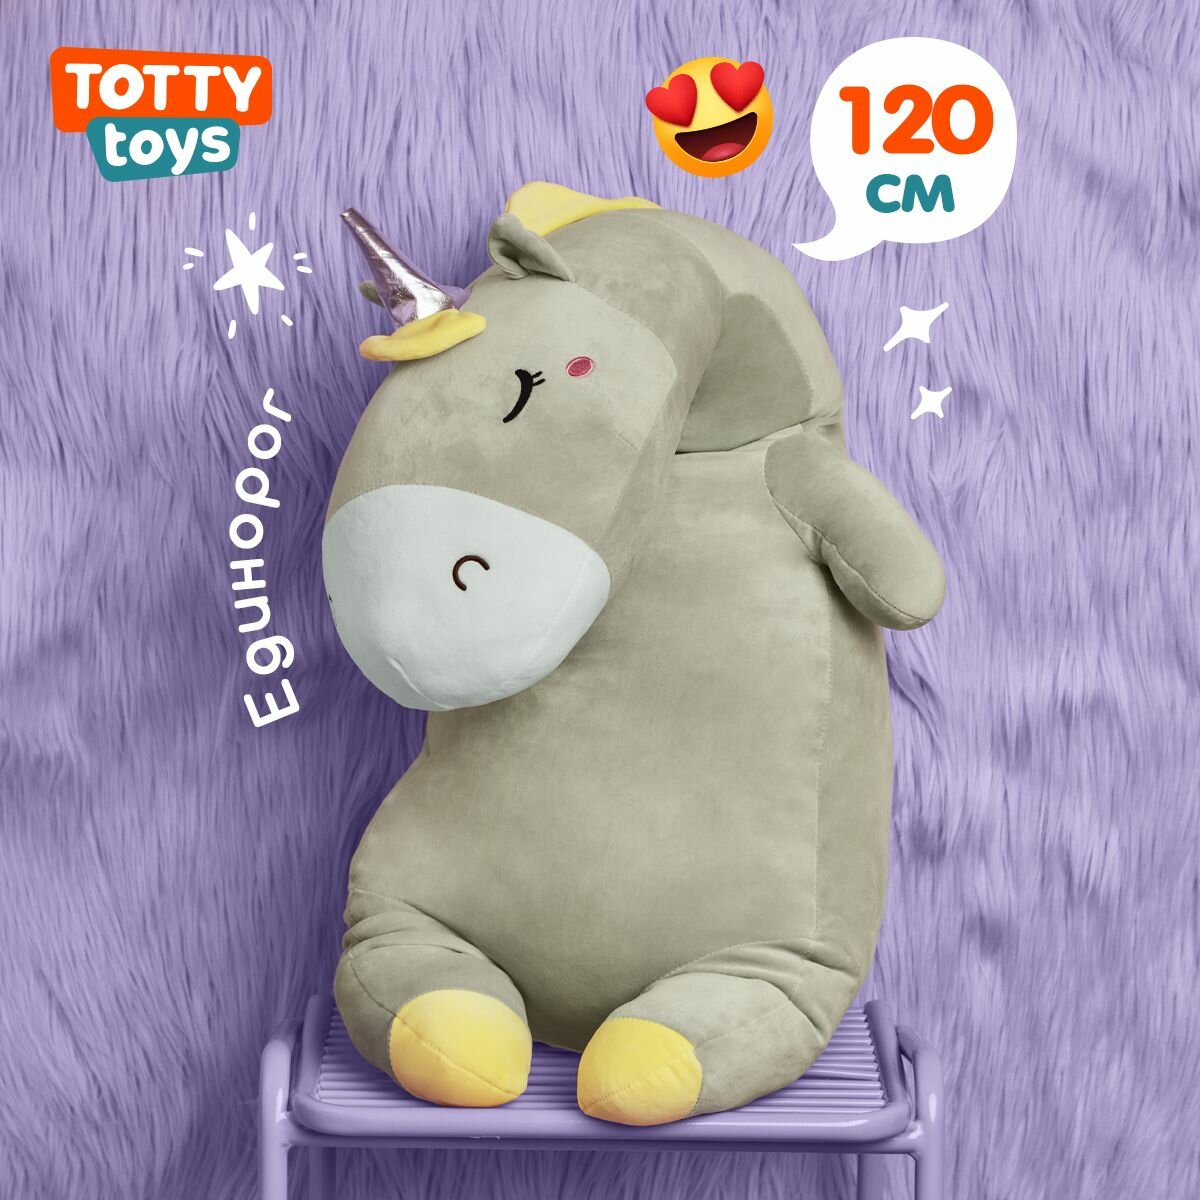 Мягкая игрушка Totty toys единорог-сплюшка серый, 120 см